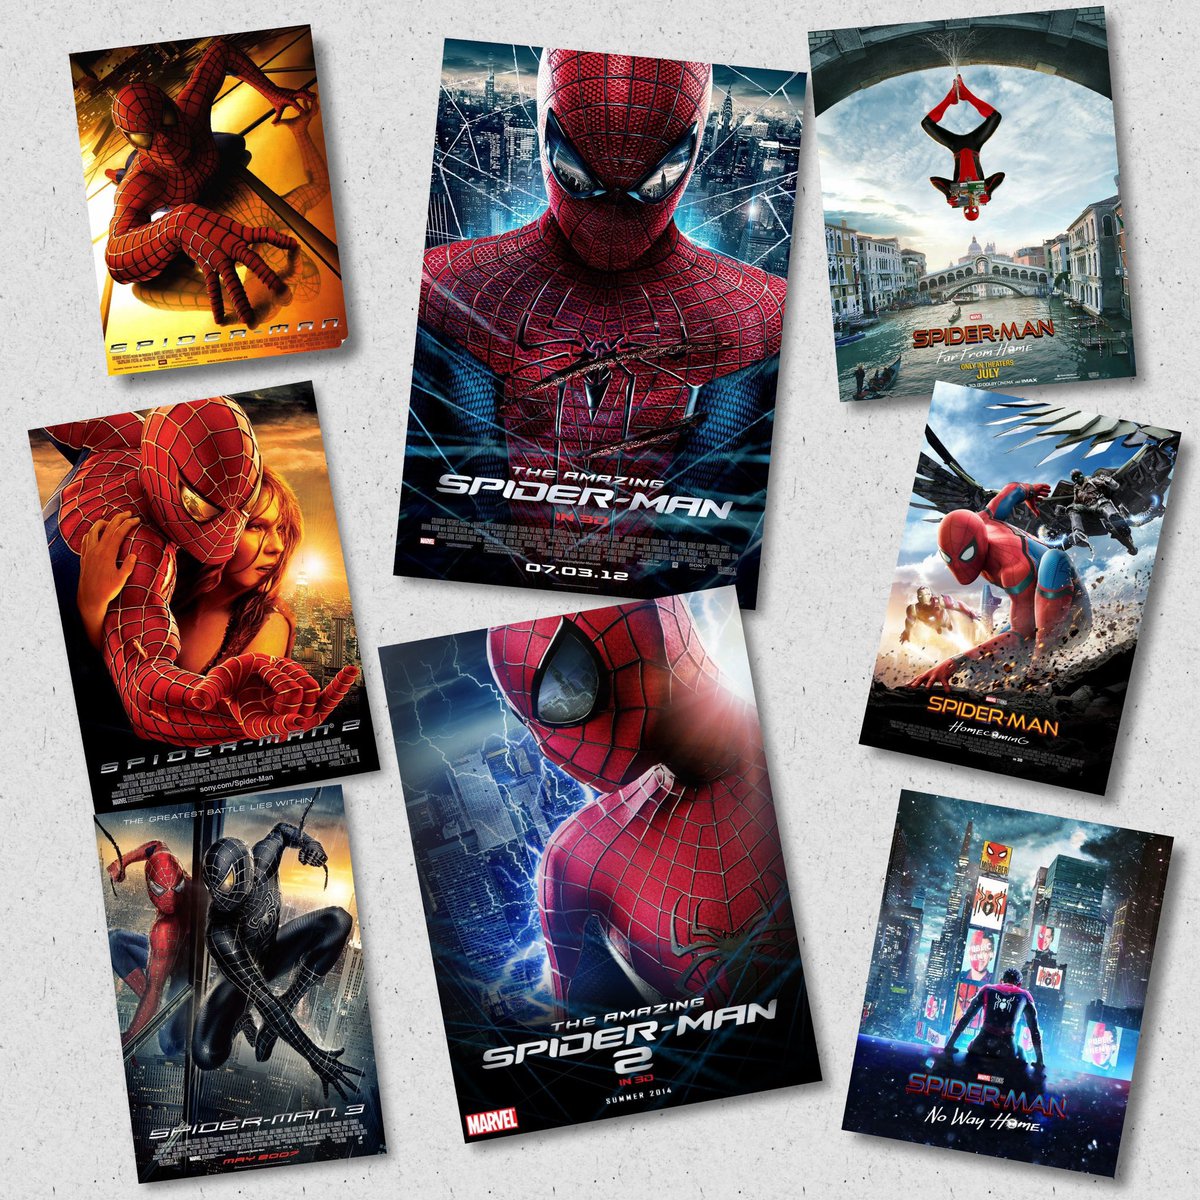 جميع افلام عالم Spiderman سيتم اعادة عرضها في Vox Cinemas كل يوم سبت ابتداءً من 11 مايو الجاري 😍❤️!